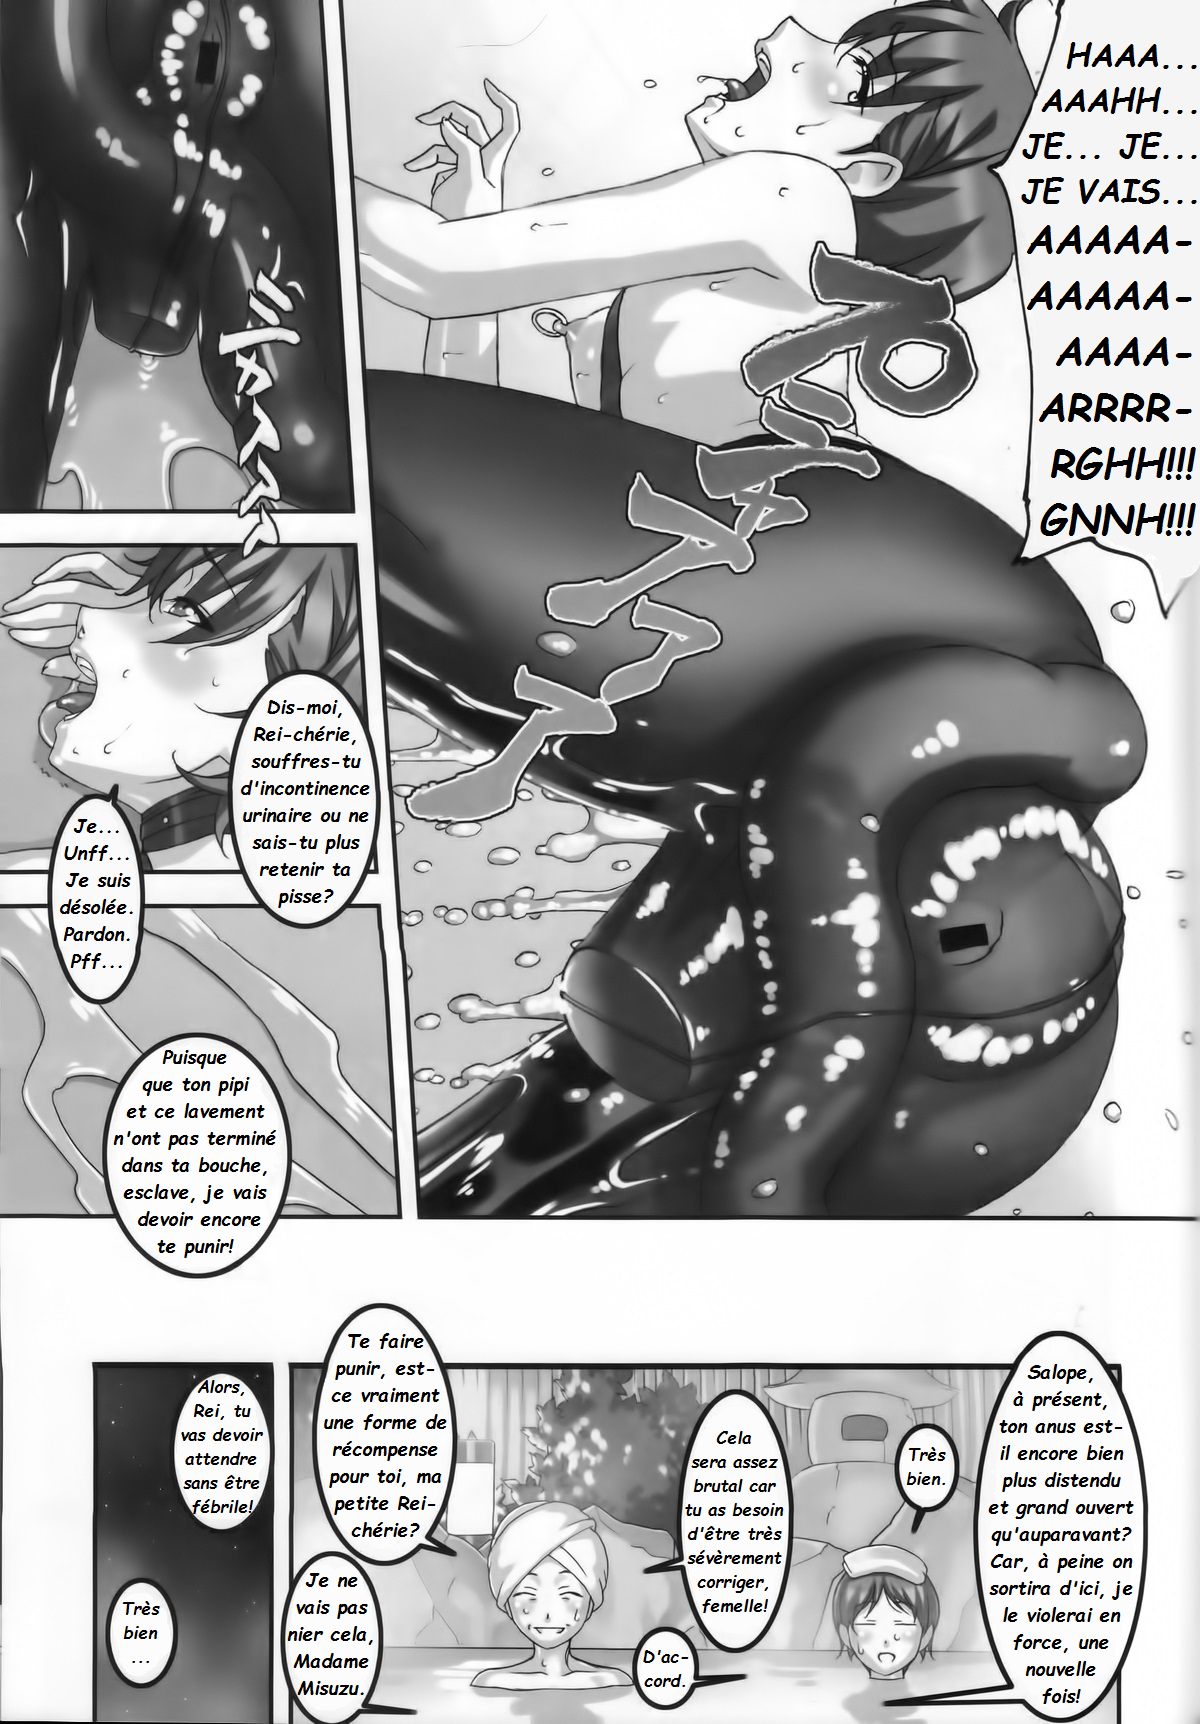 Anoko ga Natsuyasumi ni Ryokou saki de Oshiri no Ana wo Kizetsu suru hodo Naburare tsuzukeru Manga  La jeune Rei et sa nounou Misuzu. Volume 2 numero d'image 20